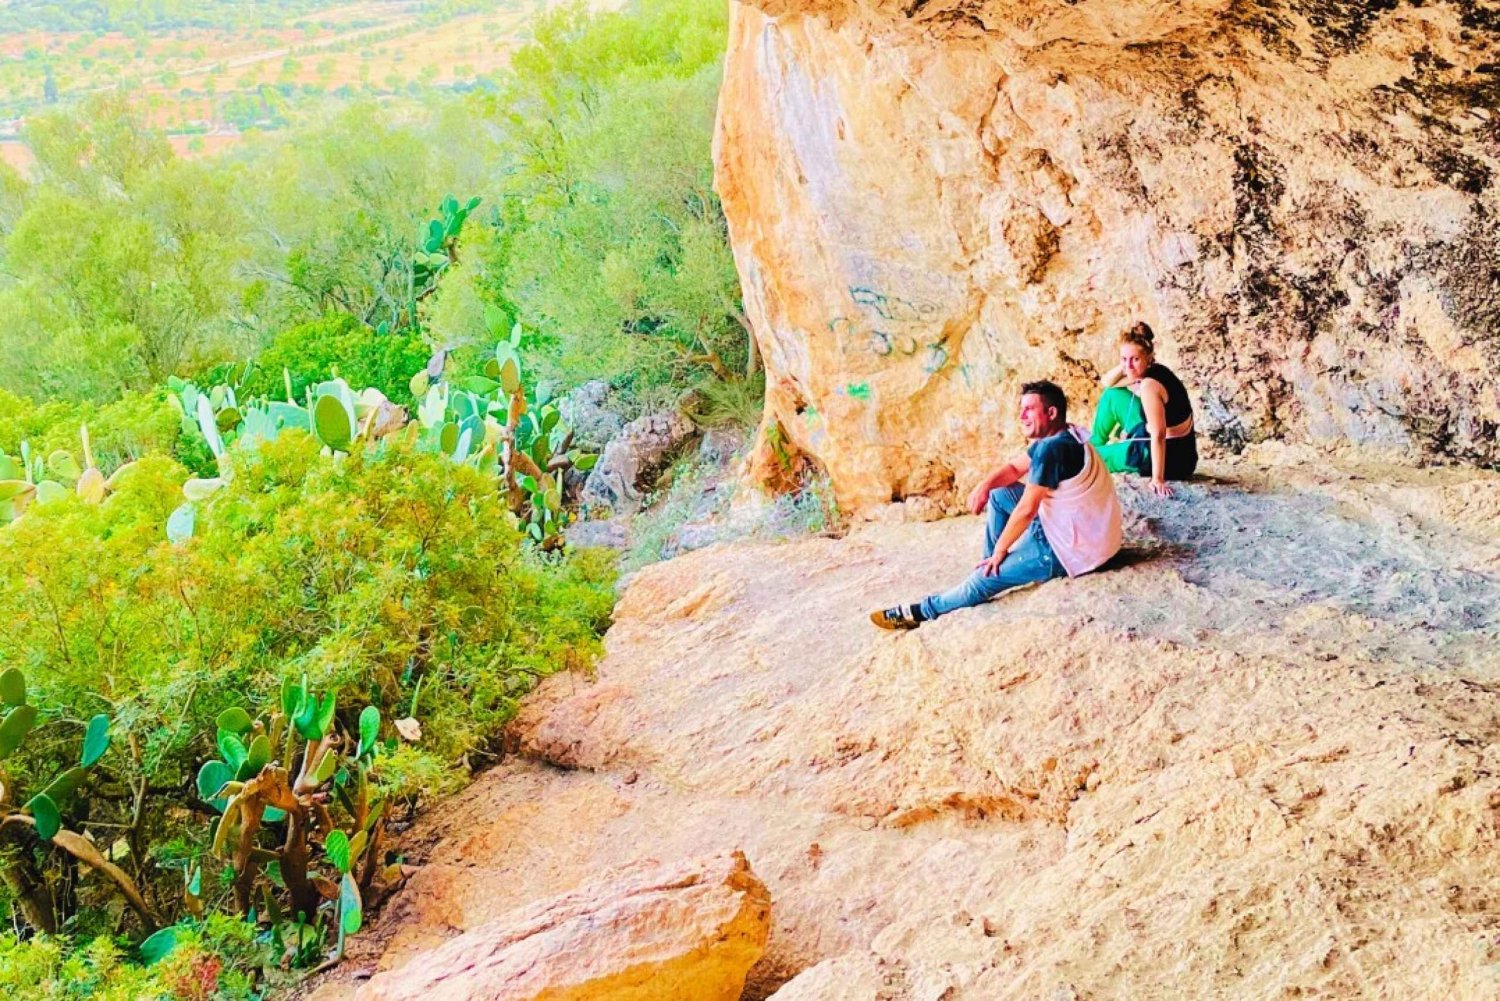 Cala Millor: 'Jaskiniowcy', jaskinia na górze, zabawa i piesza wycieczka